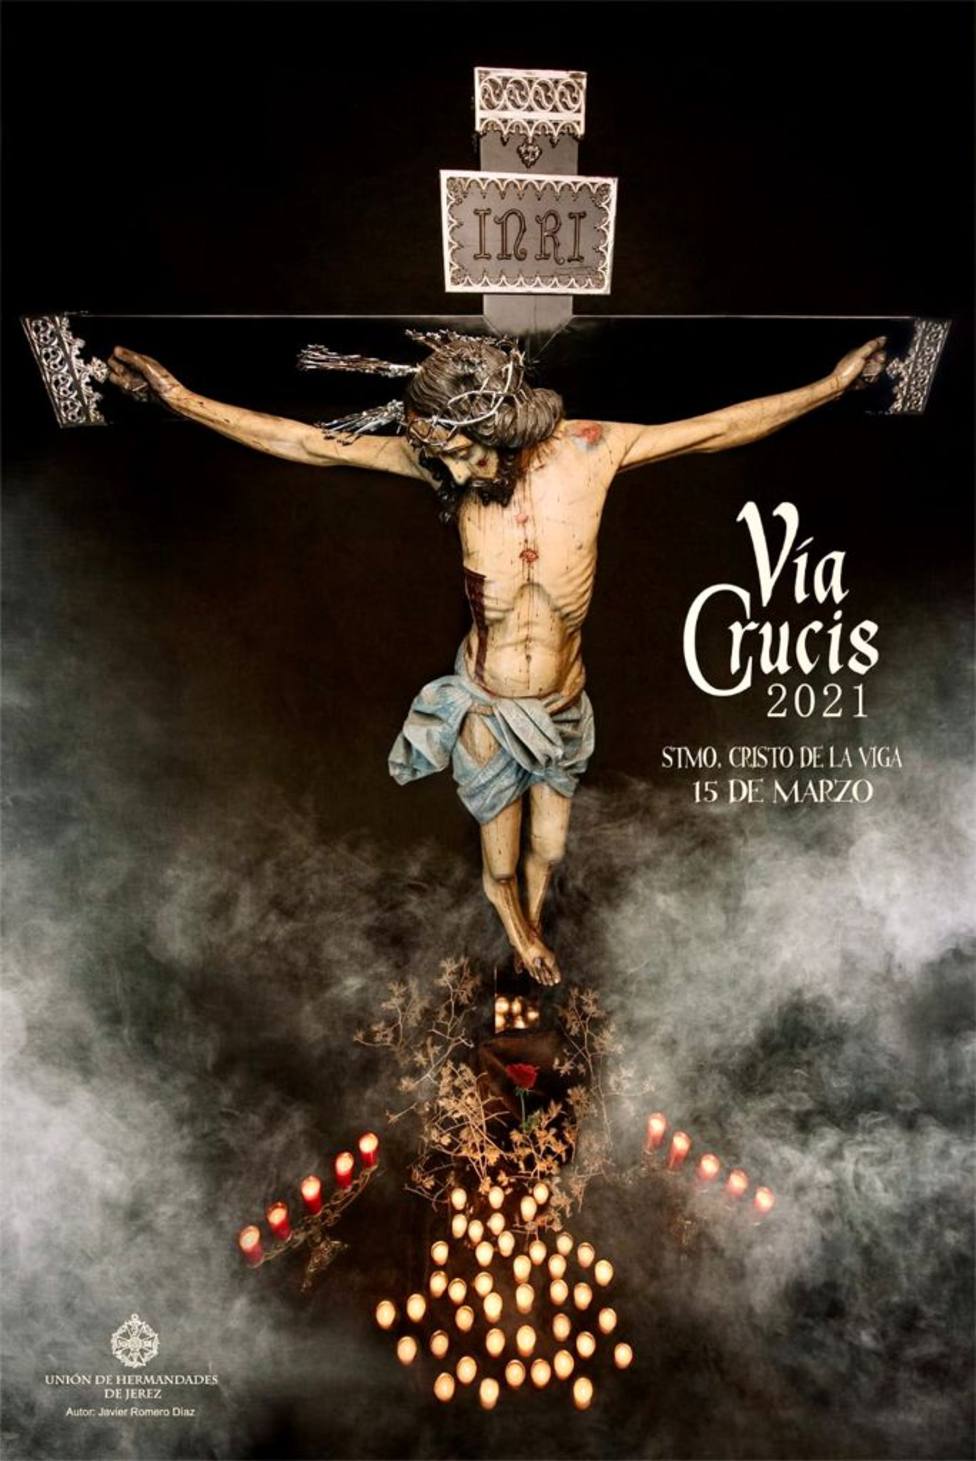 Vía-crucis con el Cristo de la Viga en la Catedral y a través de códigos QR en los hospitales